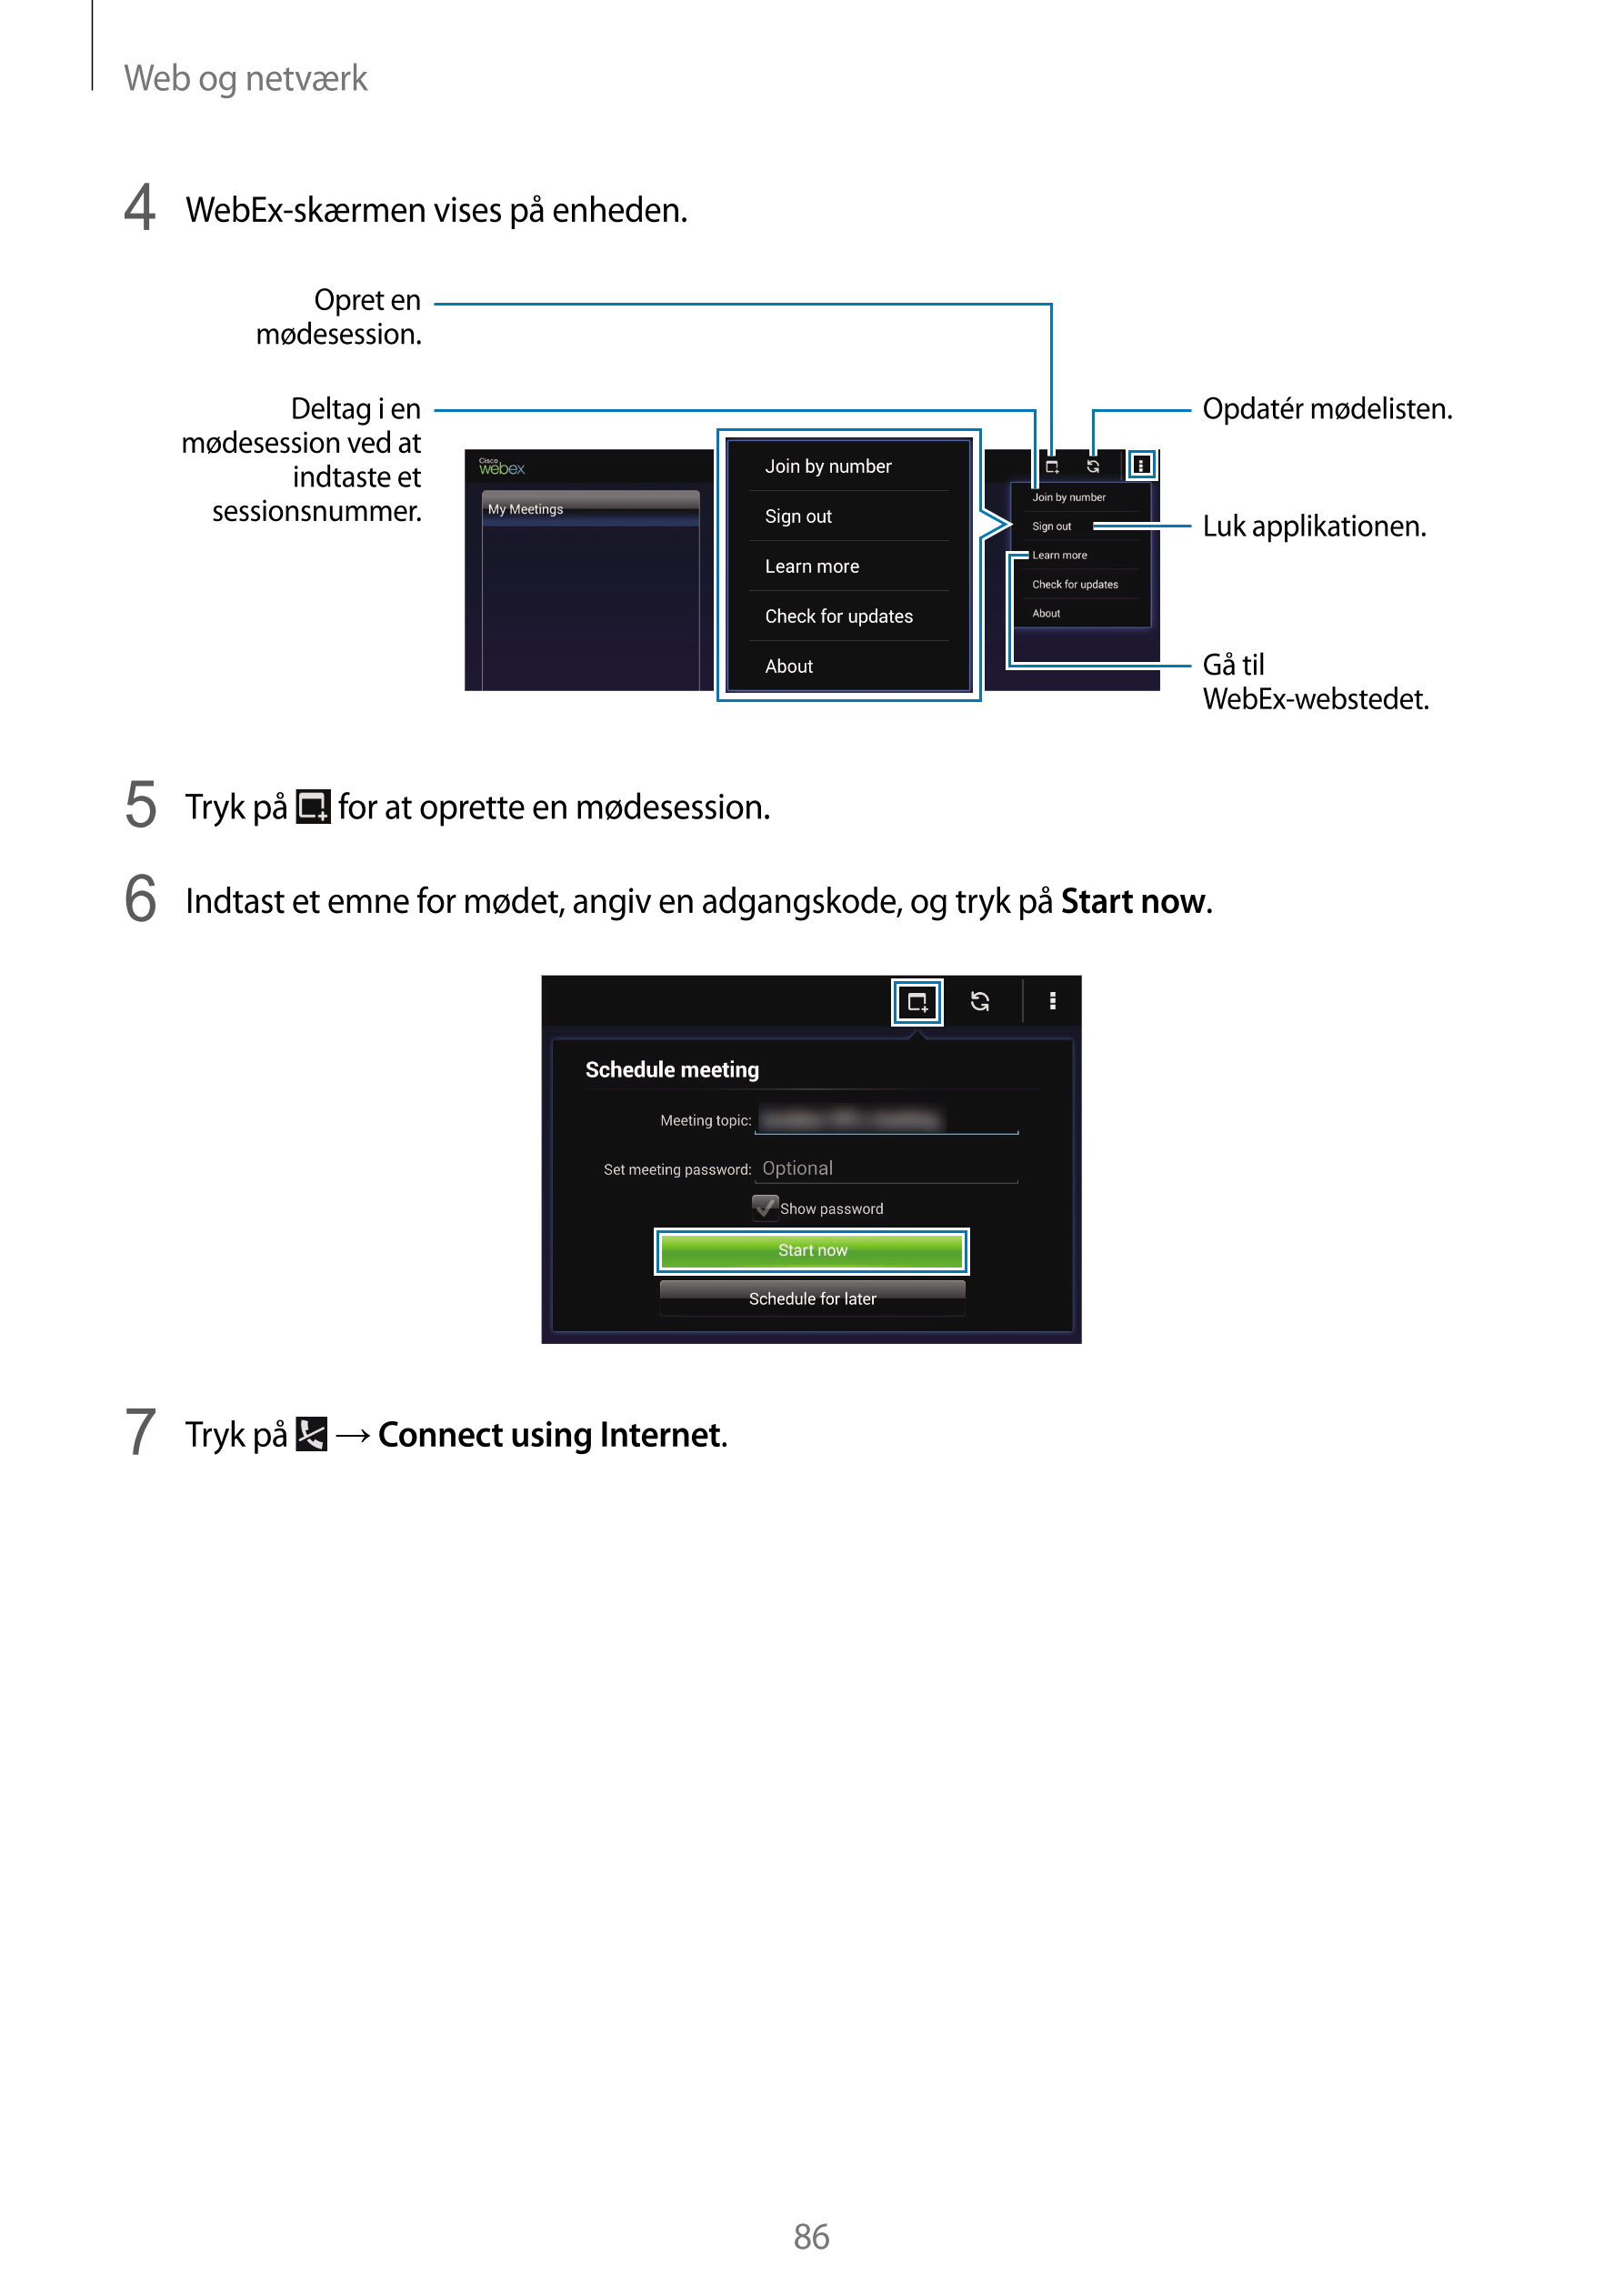 Web og netværk
4  WebEx-skærmen vises på enheden.
Opret en 
mødesession.
Deltag i en  Opdatér mødelisten.
mødesession ved at 
in